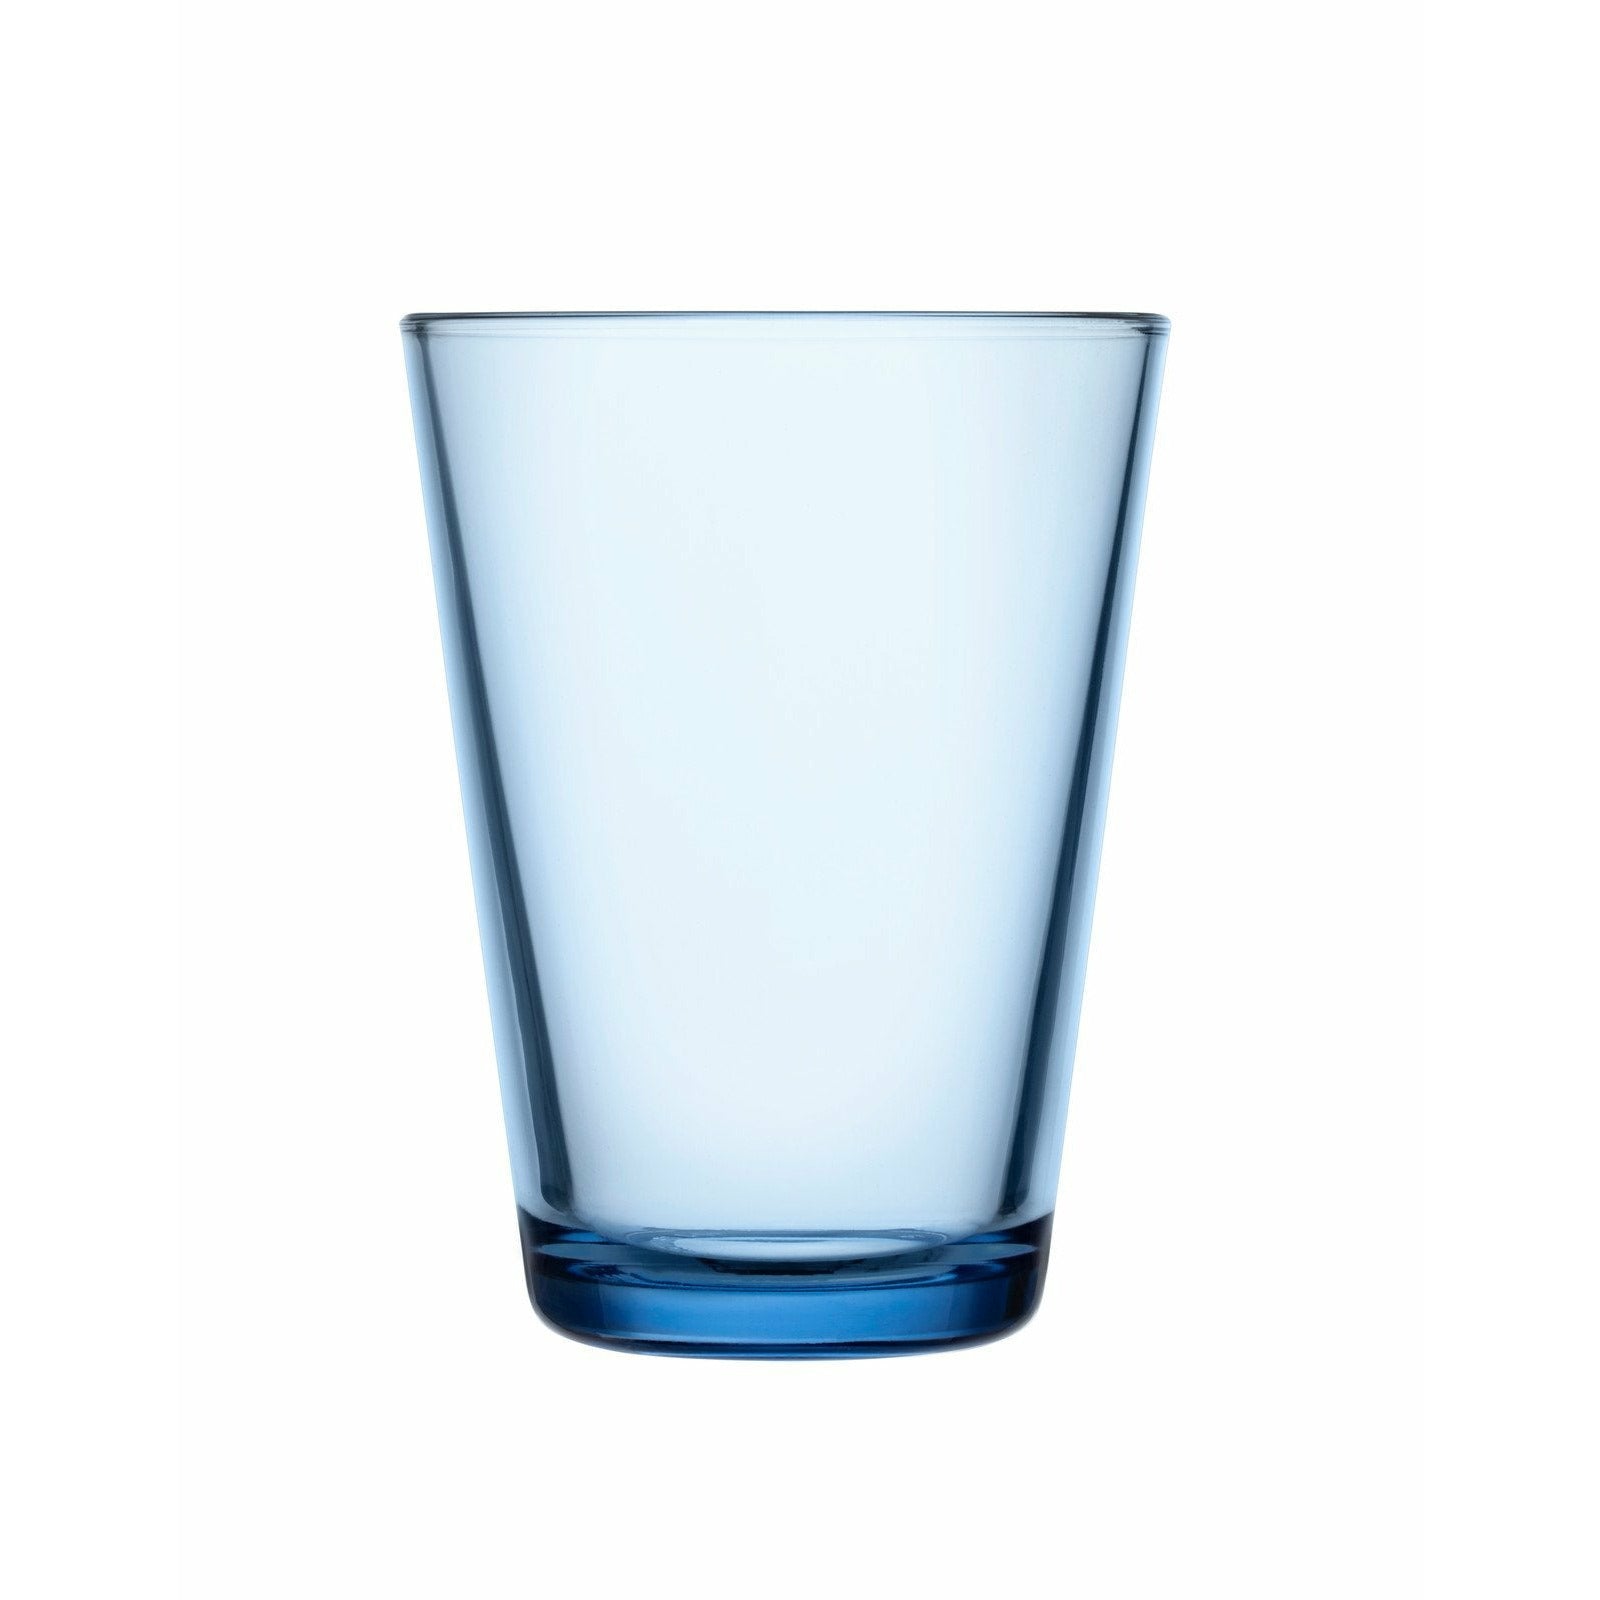 Iittala Katio Drinking Glass Aqua 40cl, 2pcs.